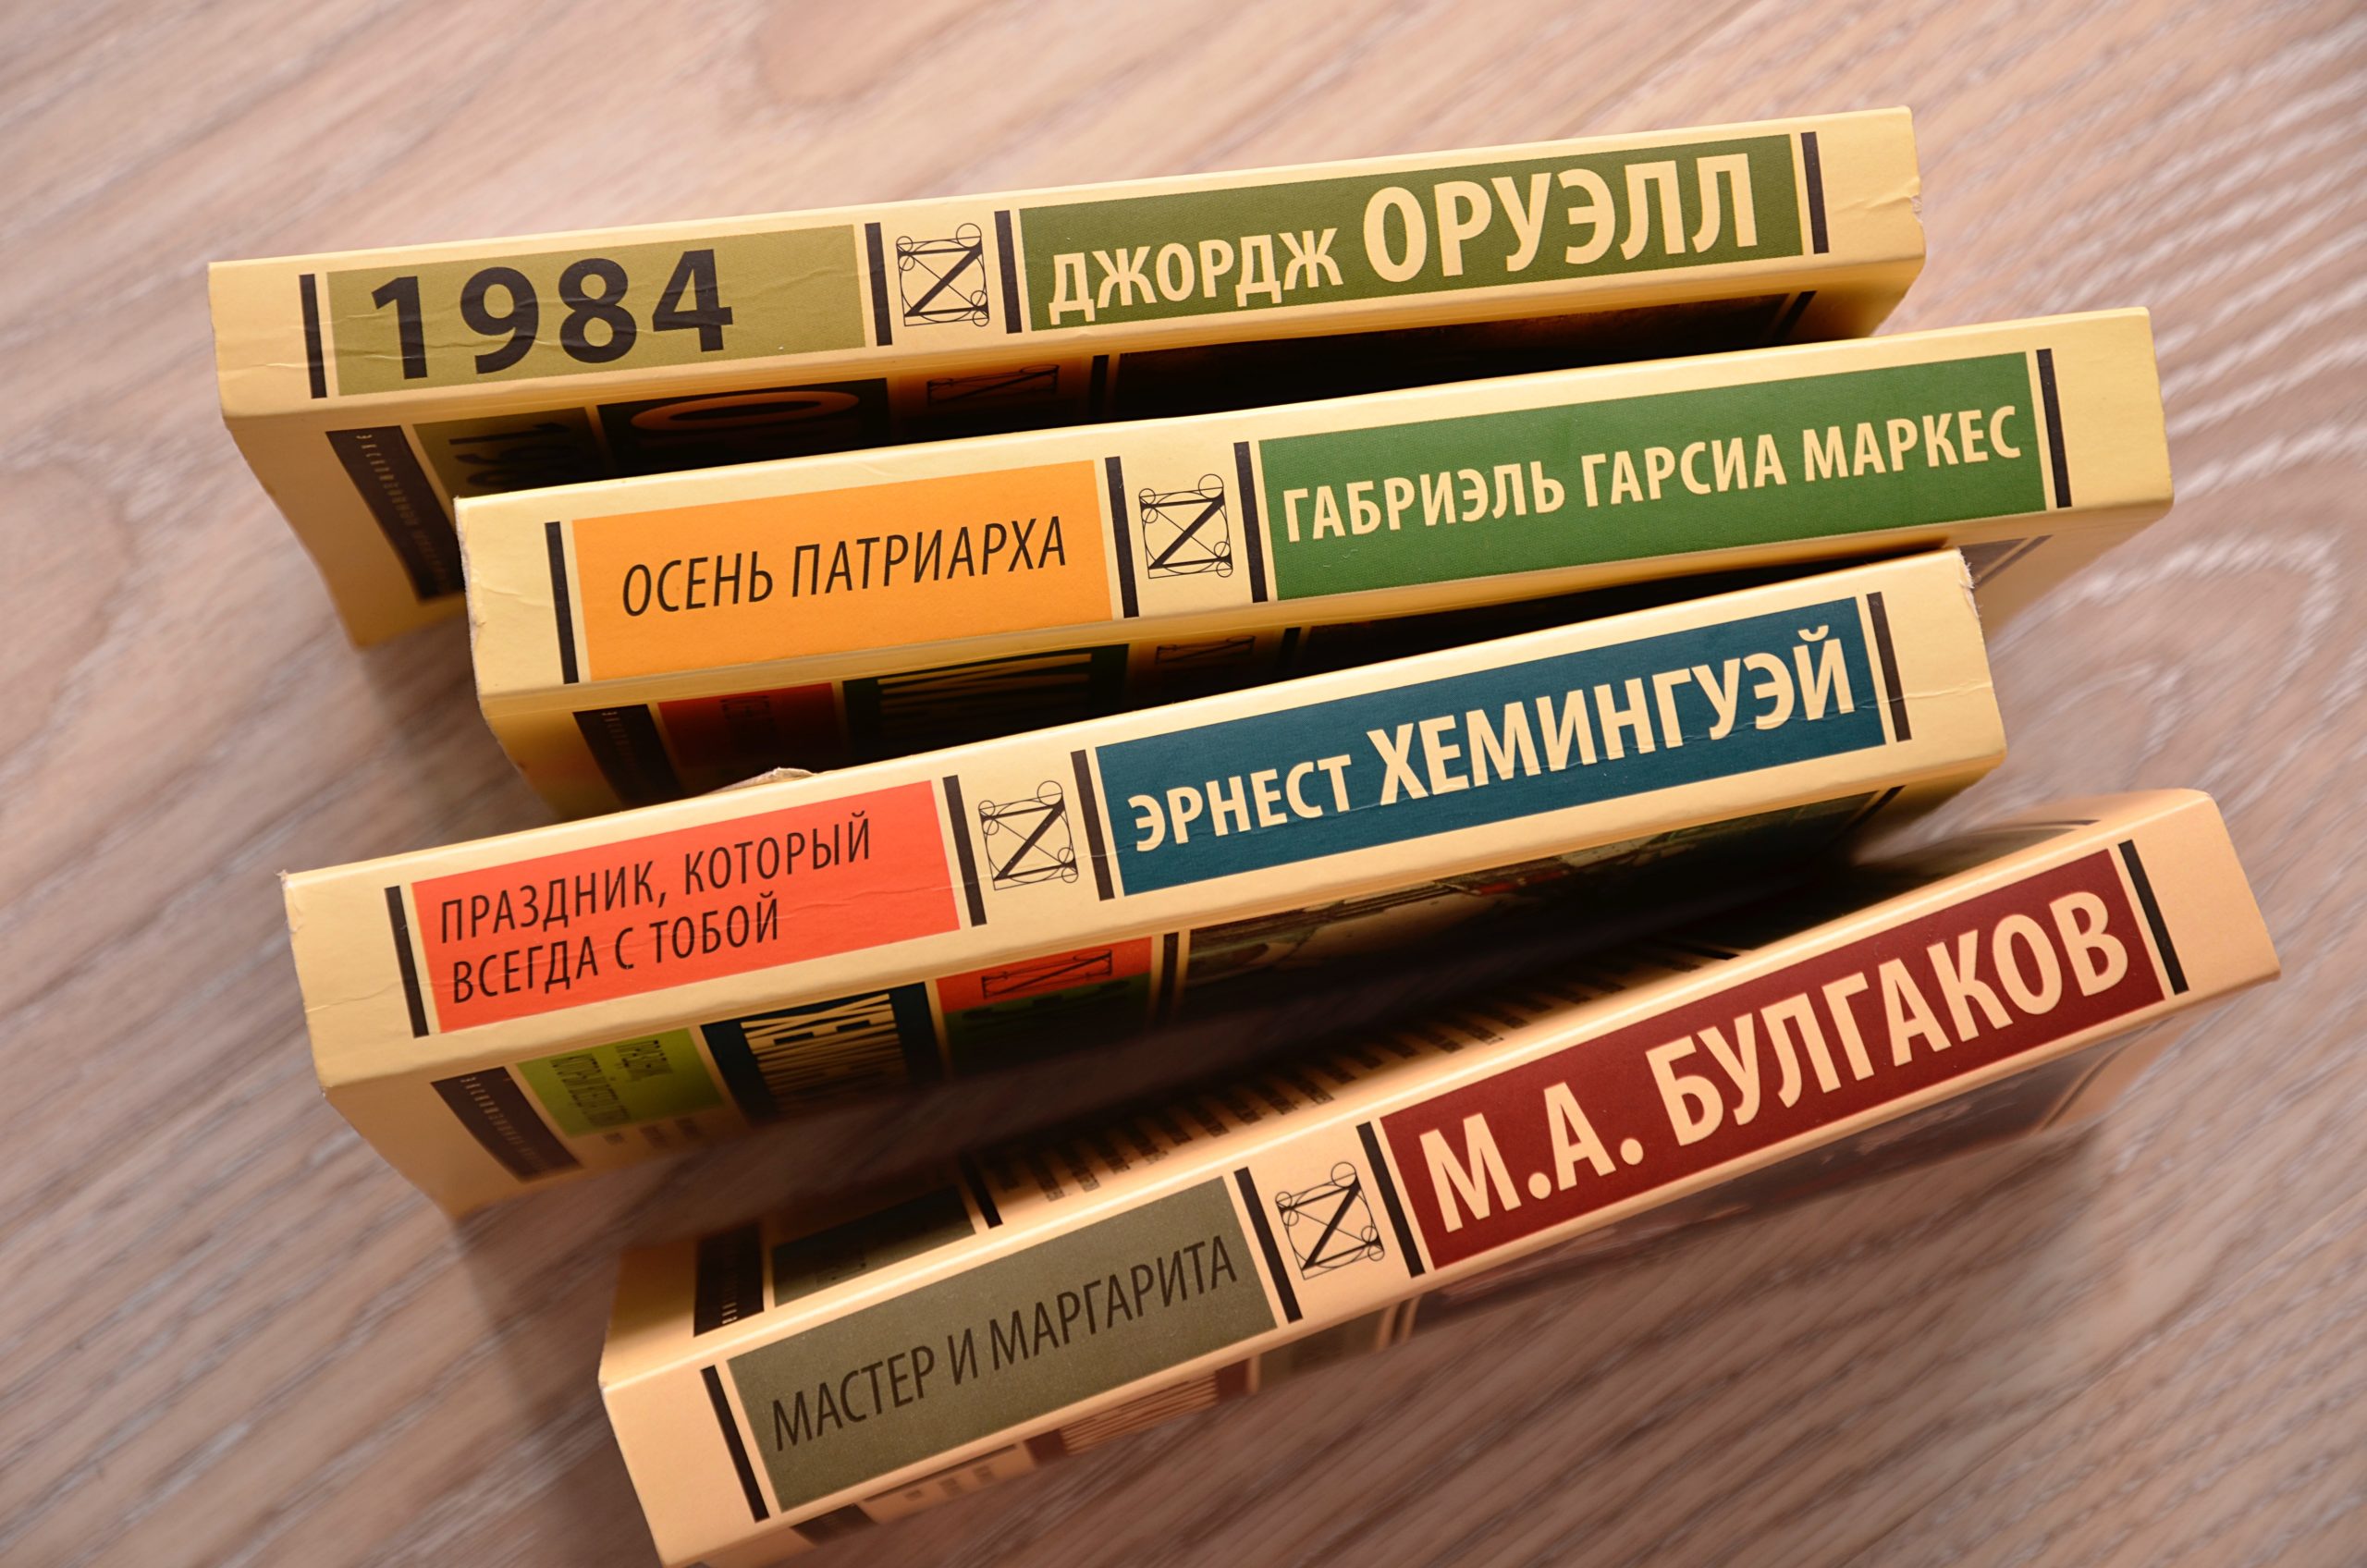 Выставка книг пройдет в ДК «Ильичевка» Первомайского